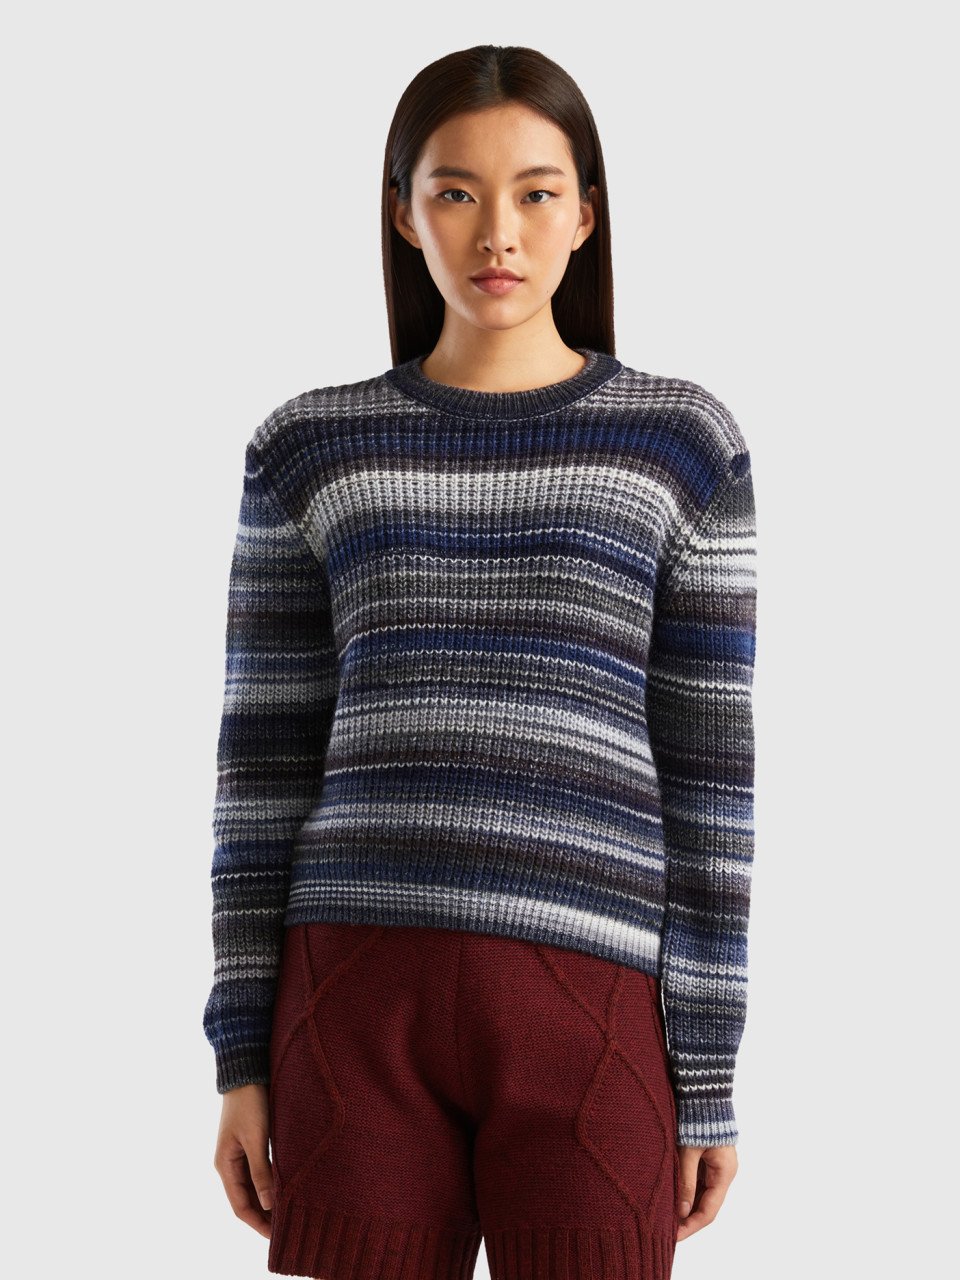 Benetton, Multicolor Striped Sweater, Multi-color, Women